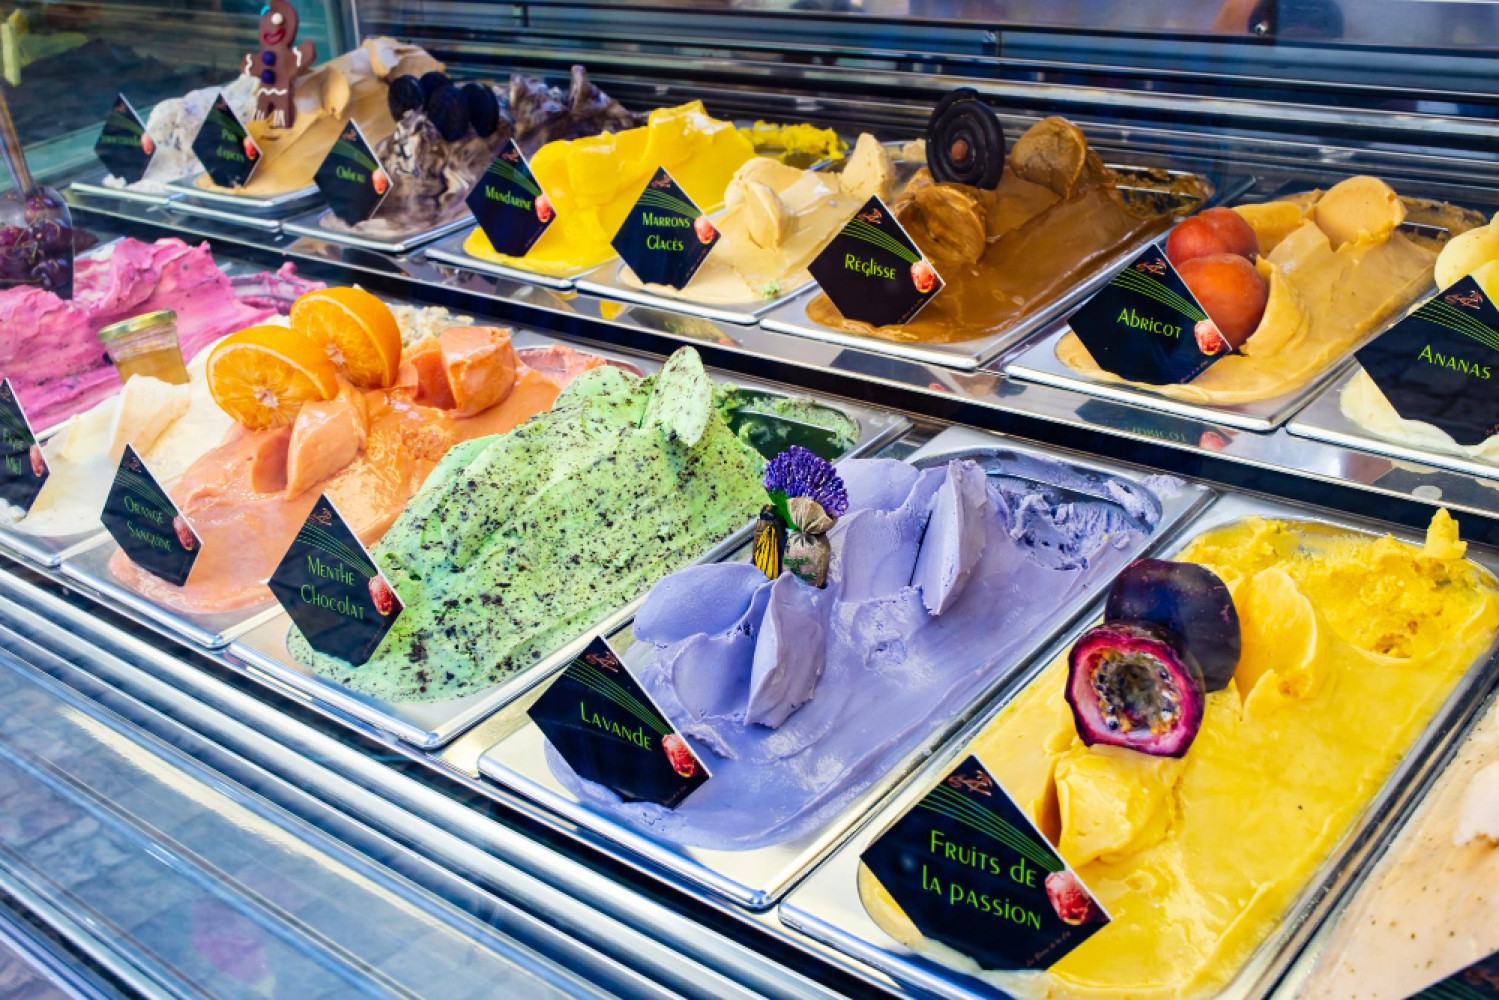 Фризеры для мороженого - это специализированные холодильные устройства, которые используются для замораживания мороженого в коммерческих целях. Они позволяют сохранять мороженое в замороженном состоянии в течение продолжительного времени, что является важным фактором для бизнеса, занимающегося производством и продажей мороженого.